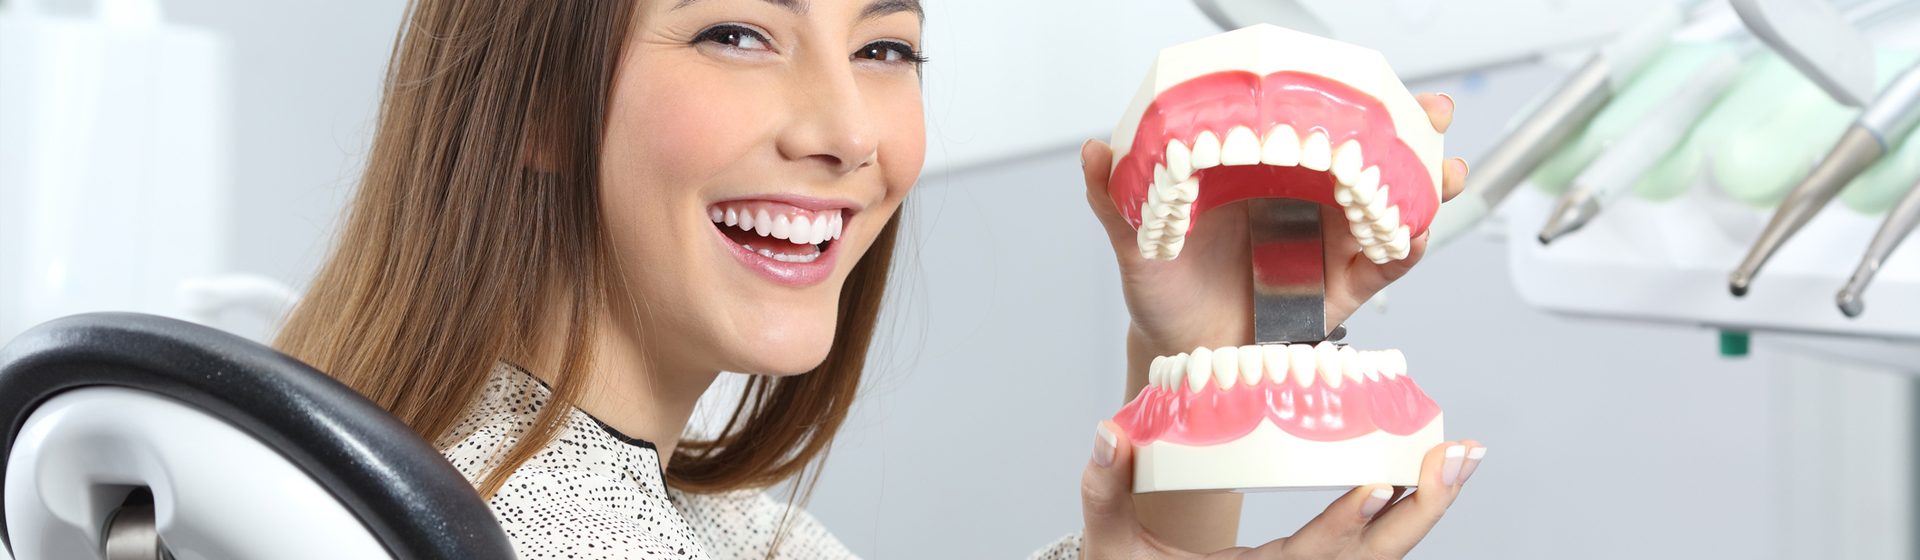 Service de dentiste à Arles – Cabinet Dentaire Mireille